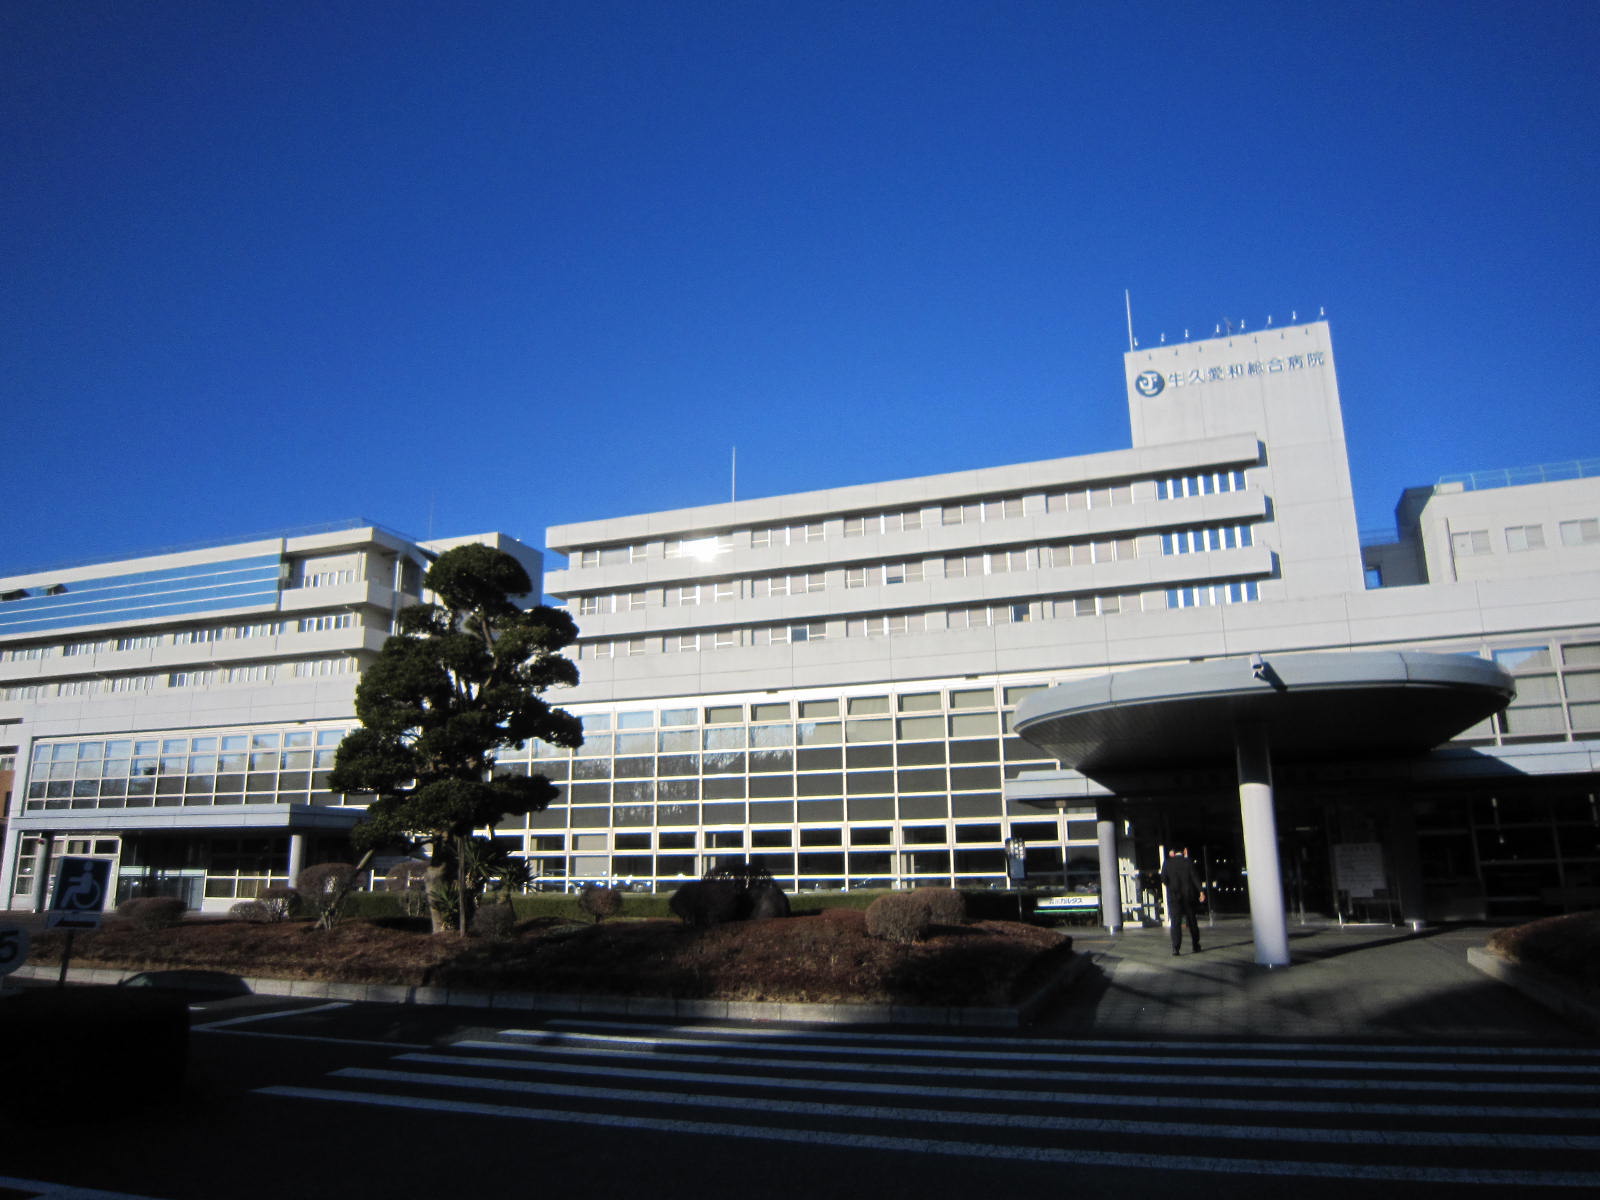 Hospital. Ushikuaiwasogobyoin until the (hospital) 1725m